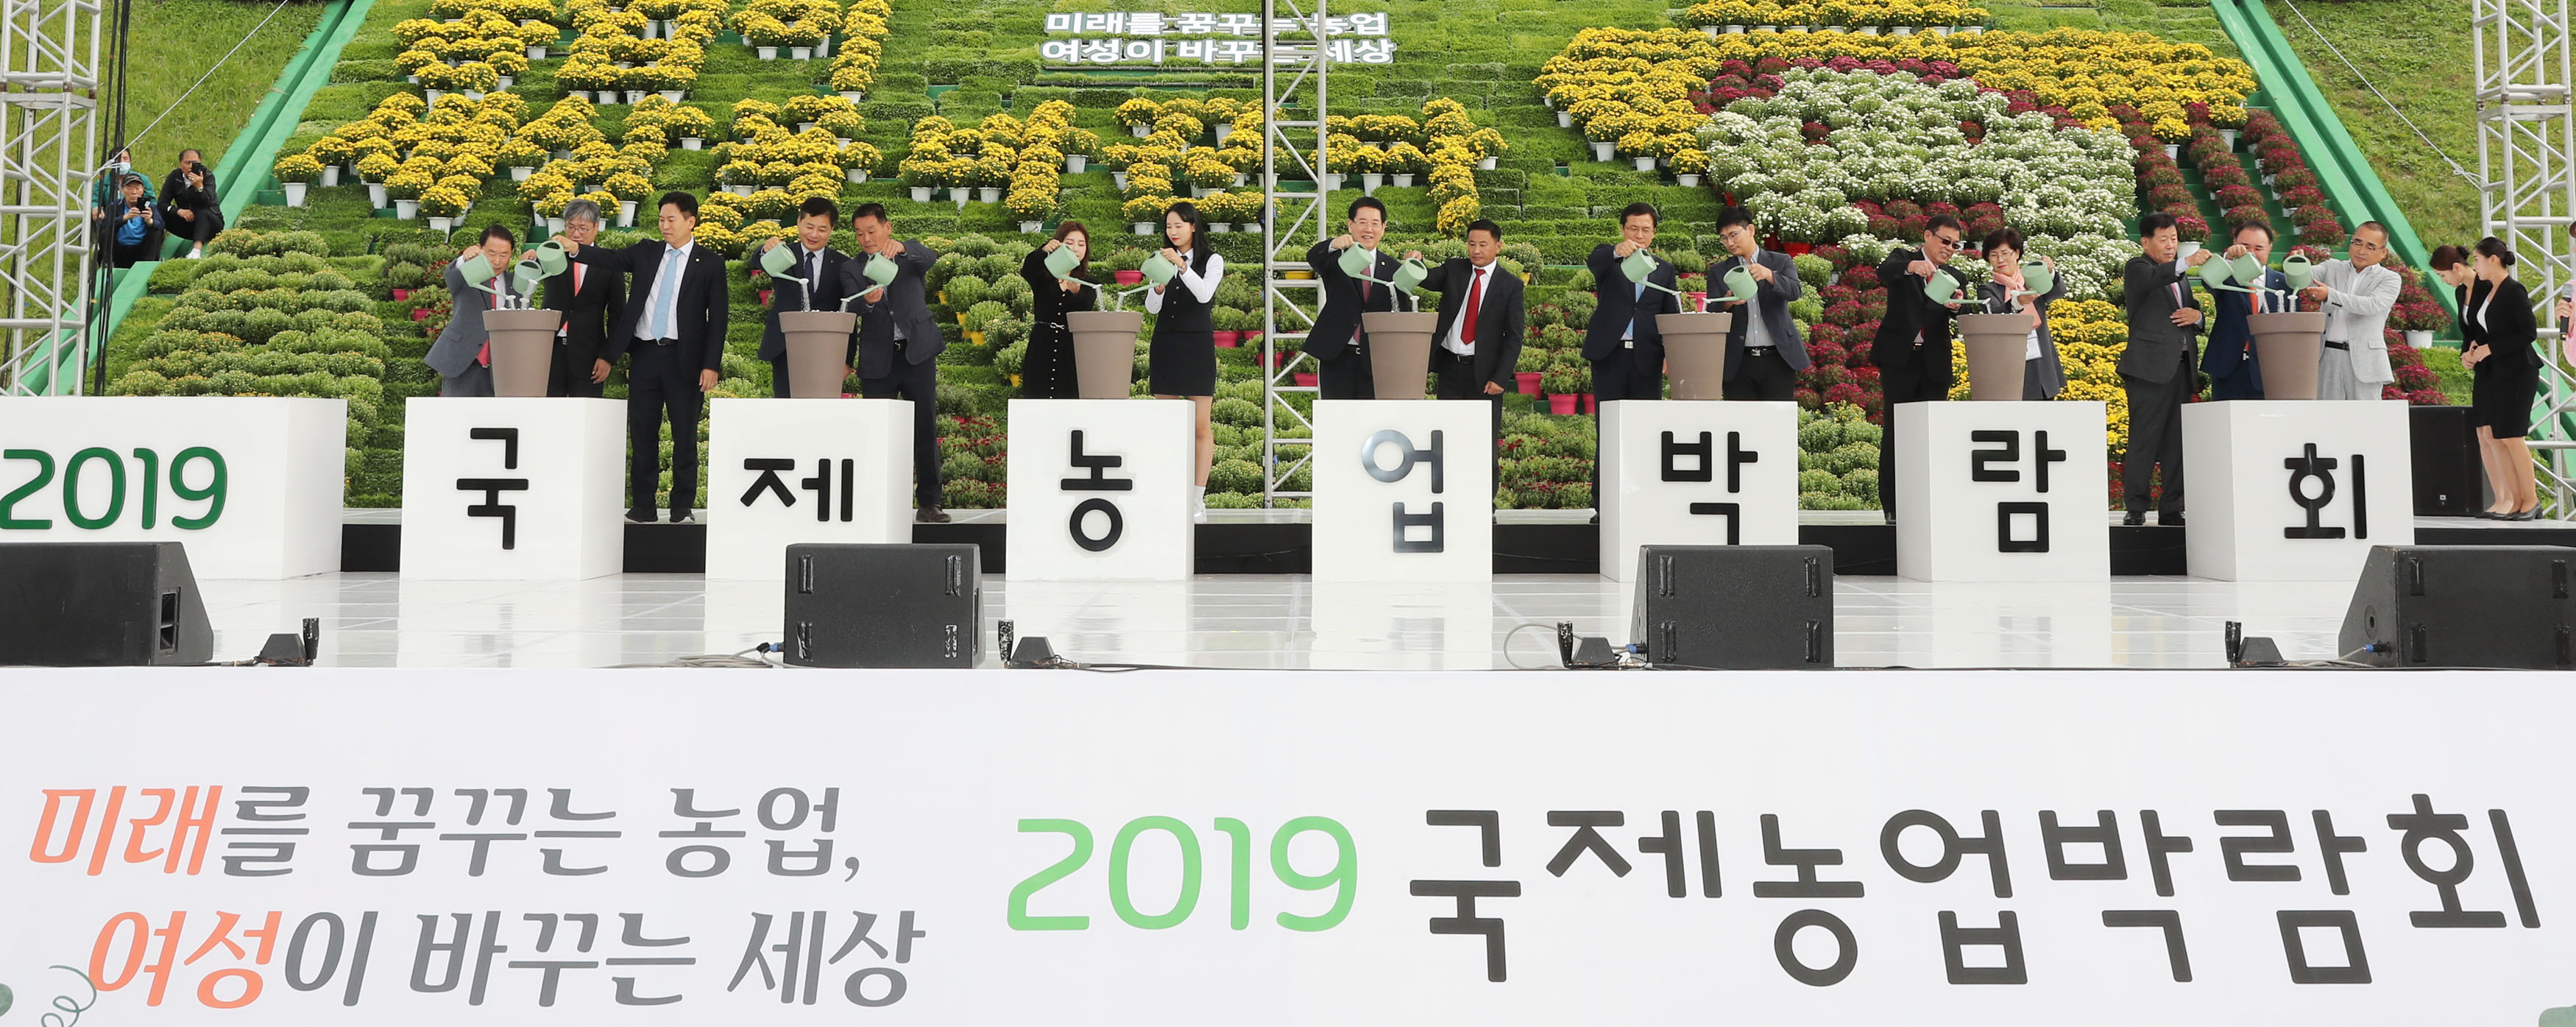 2019 국제농업박람회 개막식1